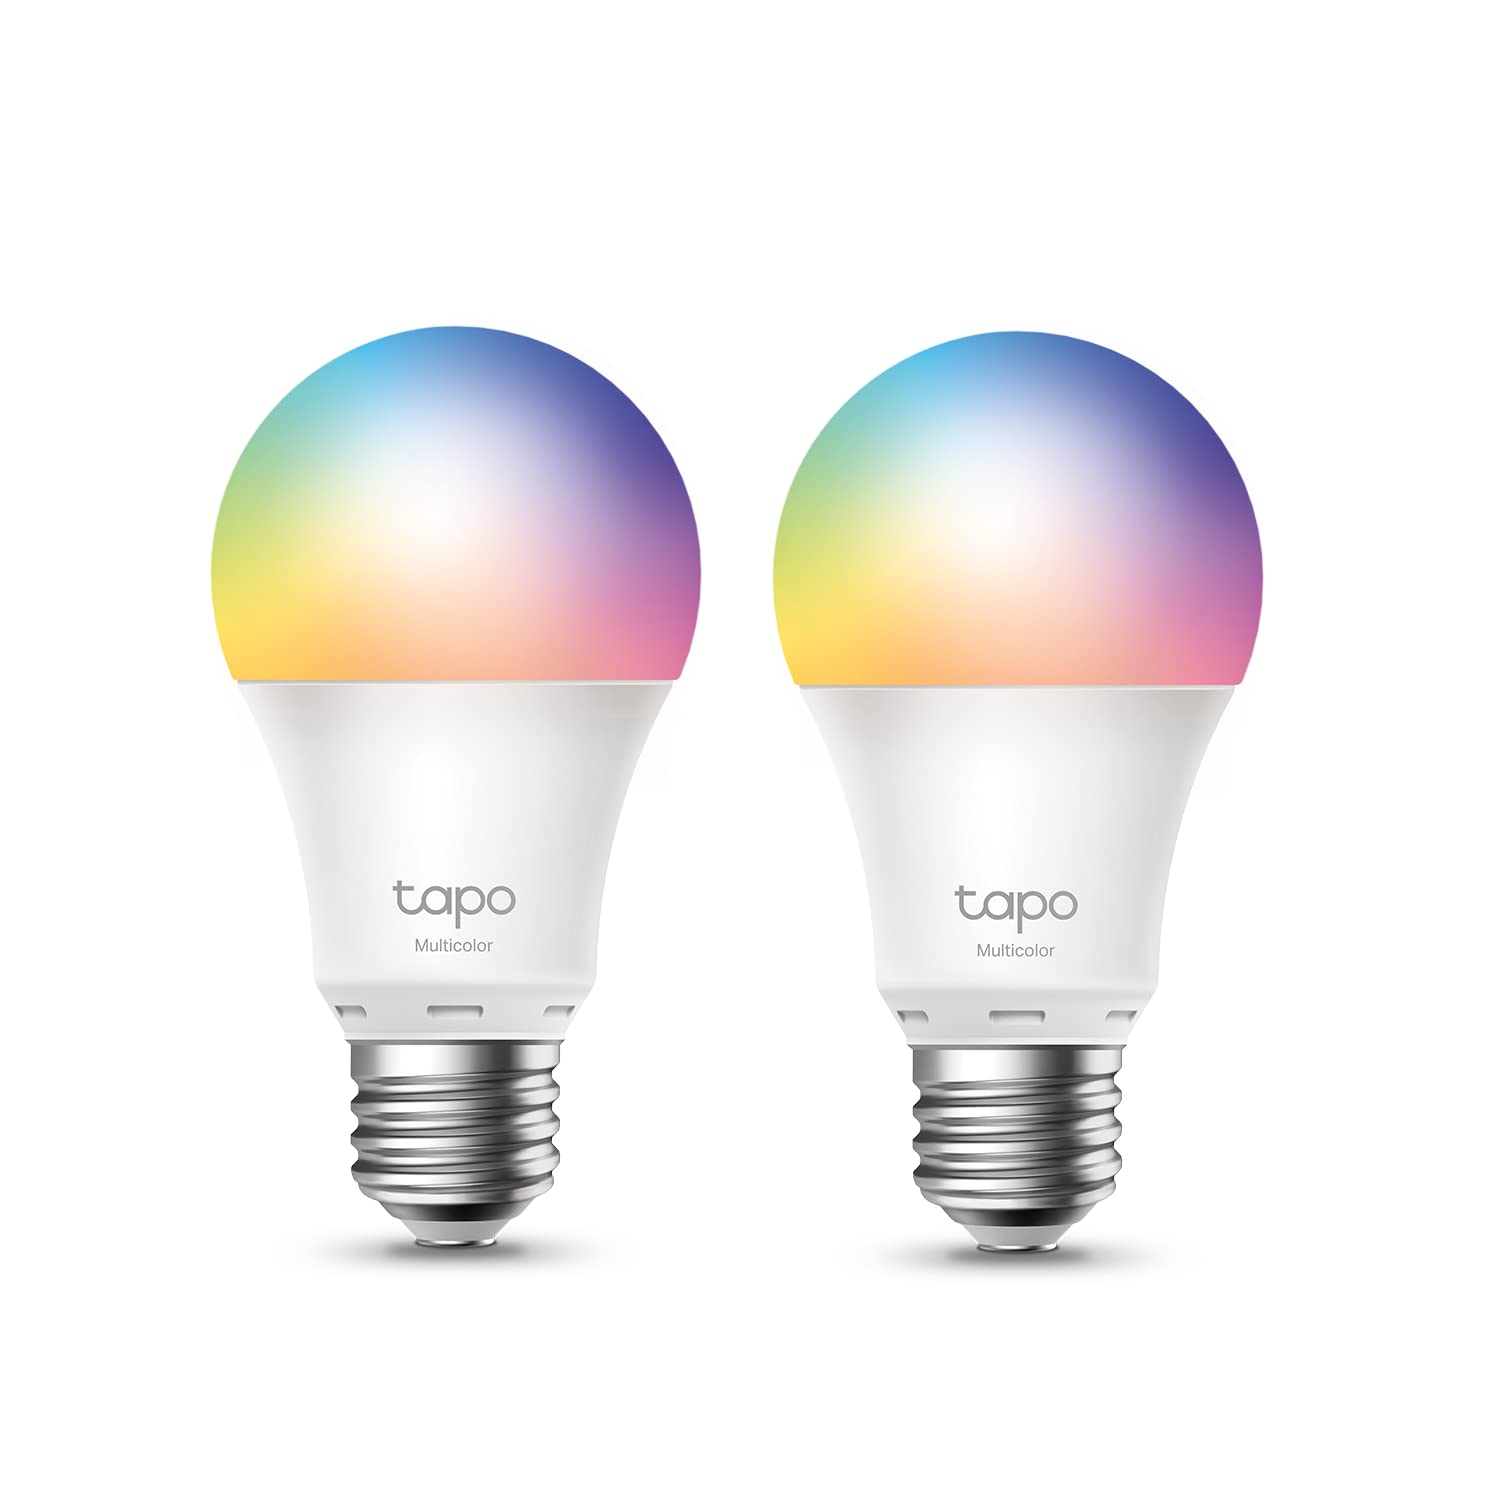 Smart light bulbs